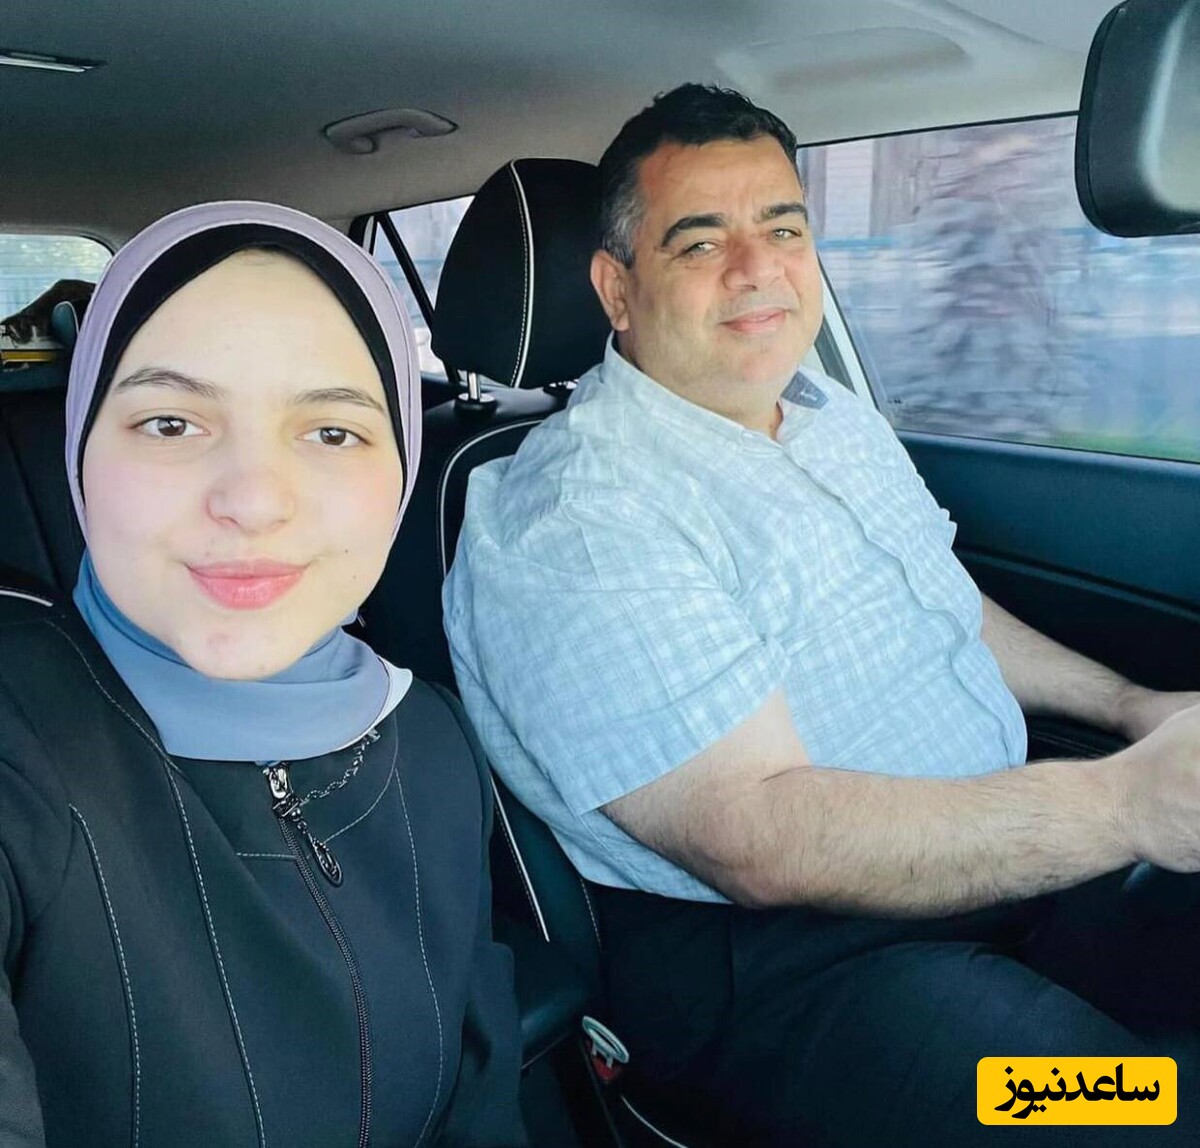 واکنش جگرسوز سارا، دختر اسماعیل هنیه با شنیدن خبر شهادت پدرش+عکس